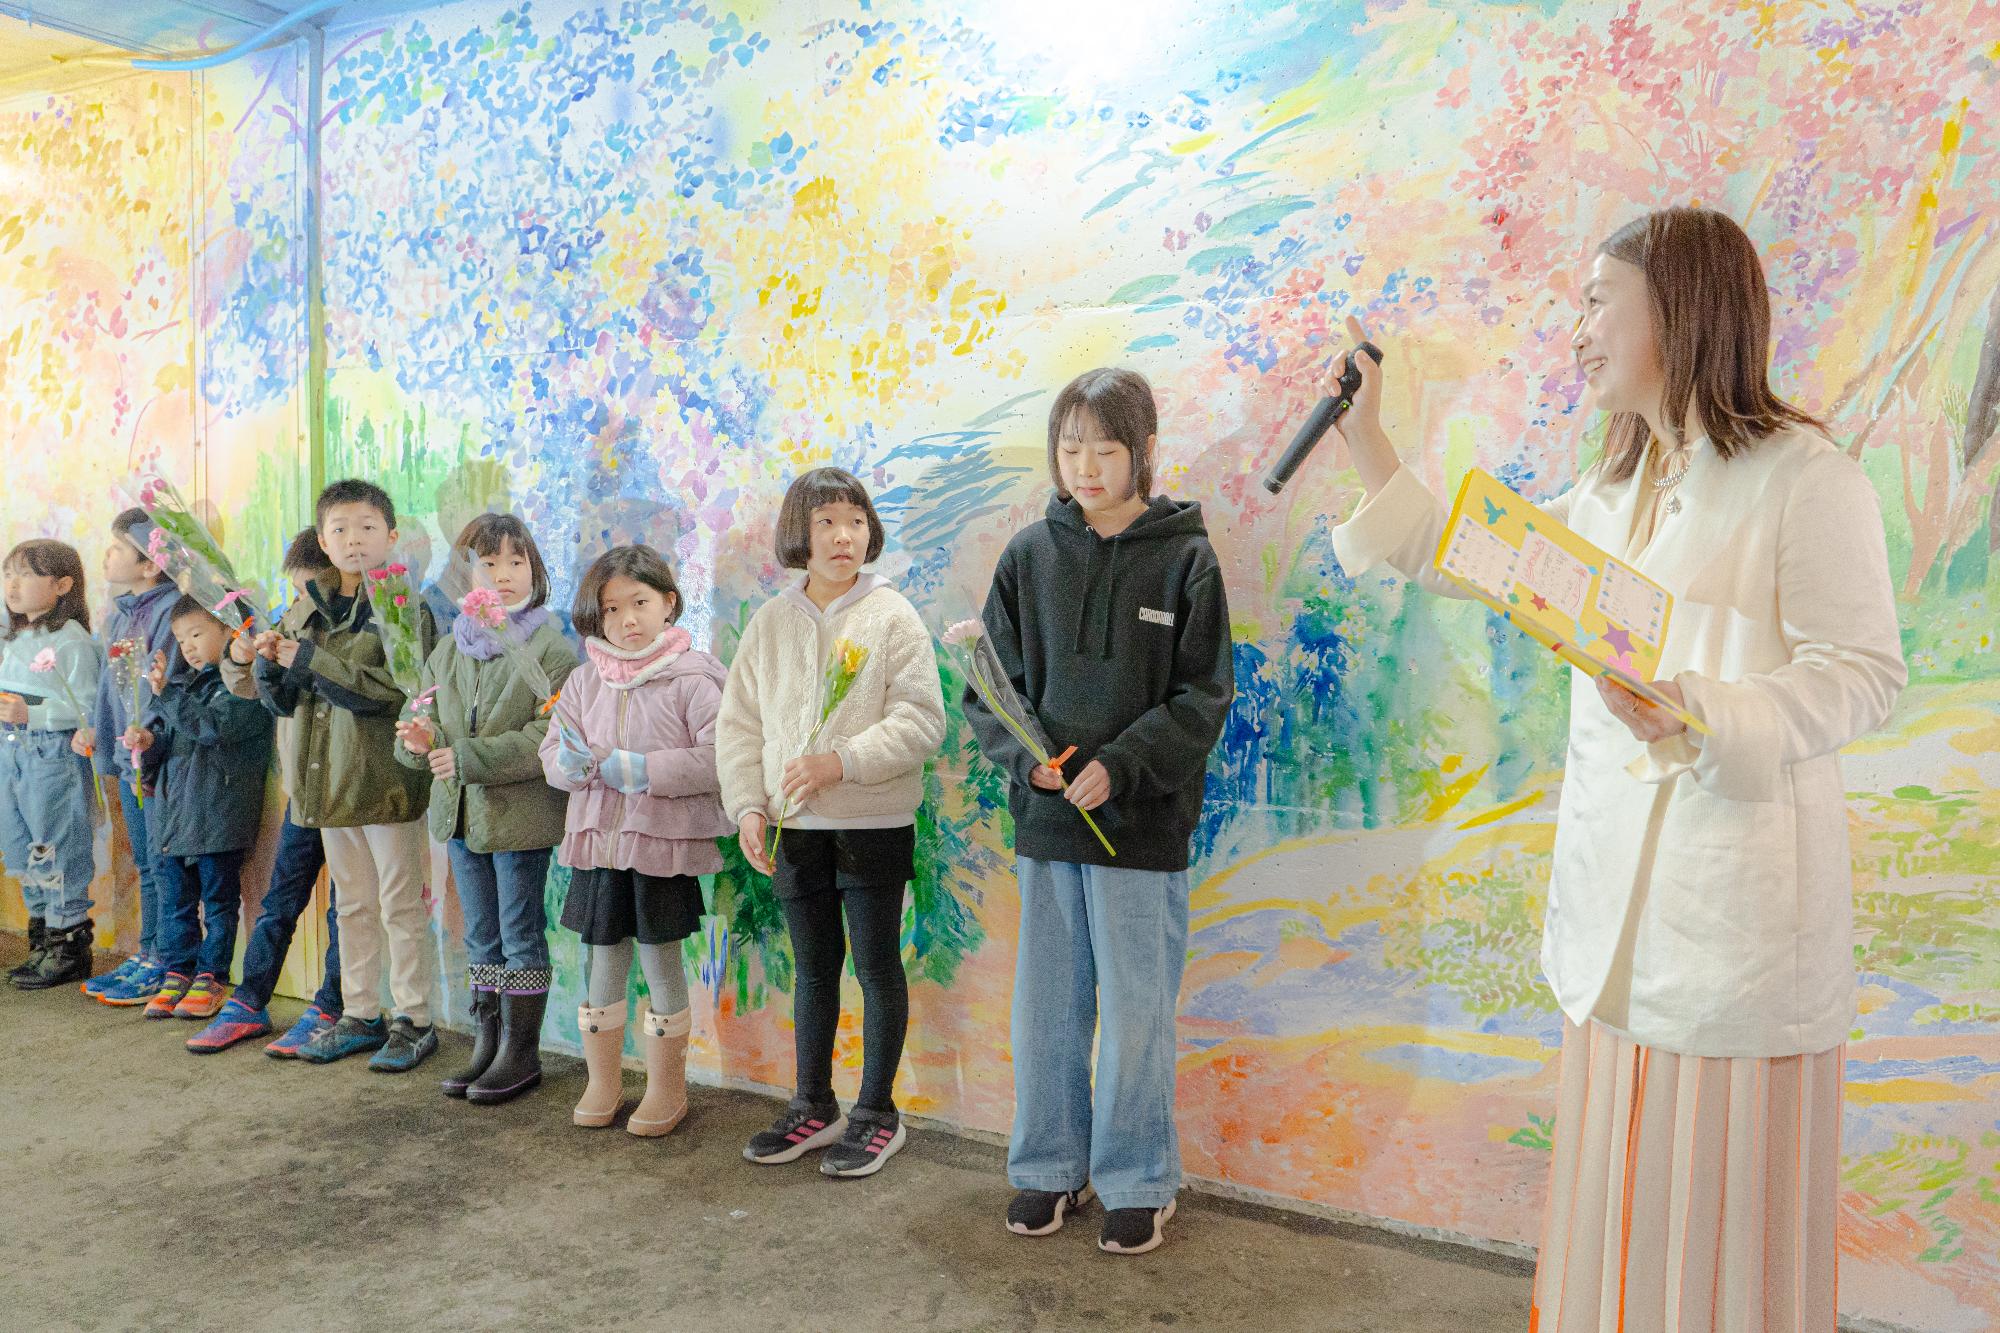 シソラミチお披露目会で美術作家の植田志保さんの話を聞く参加者らの写真